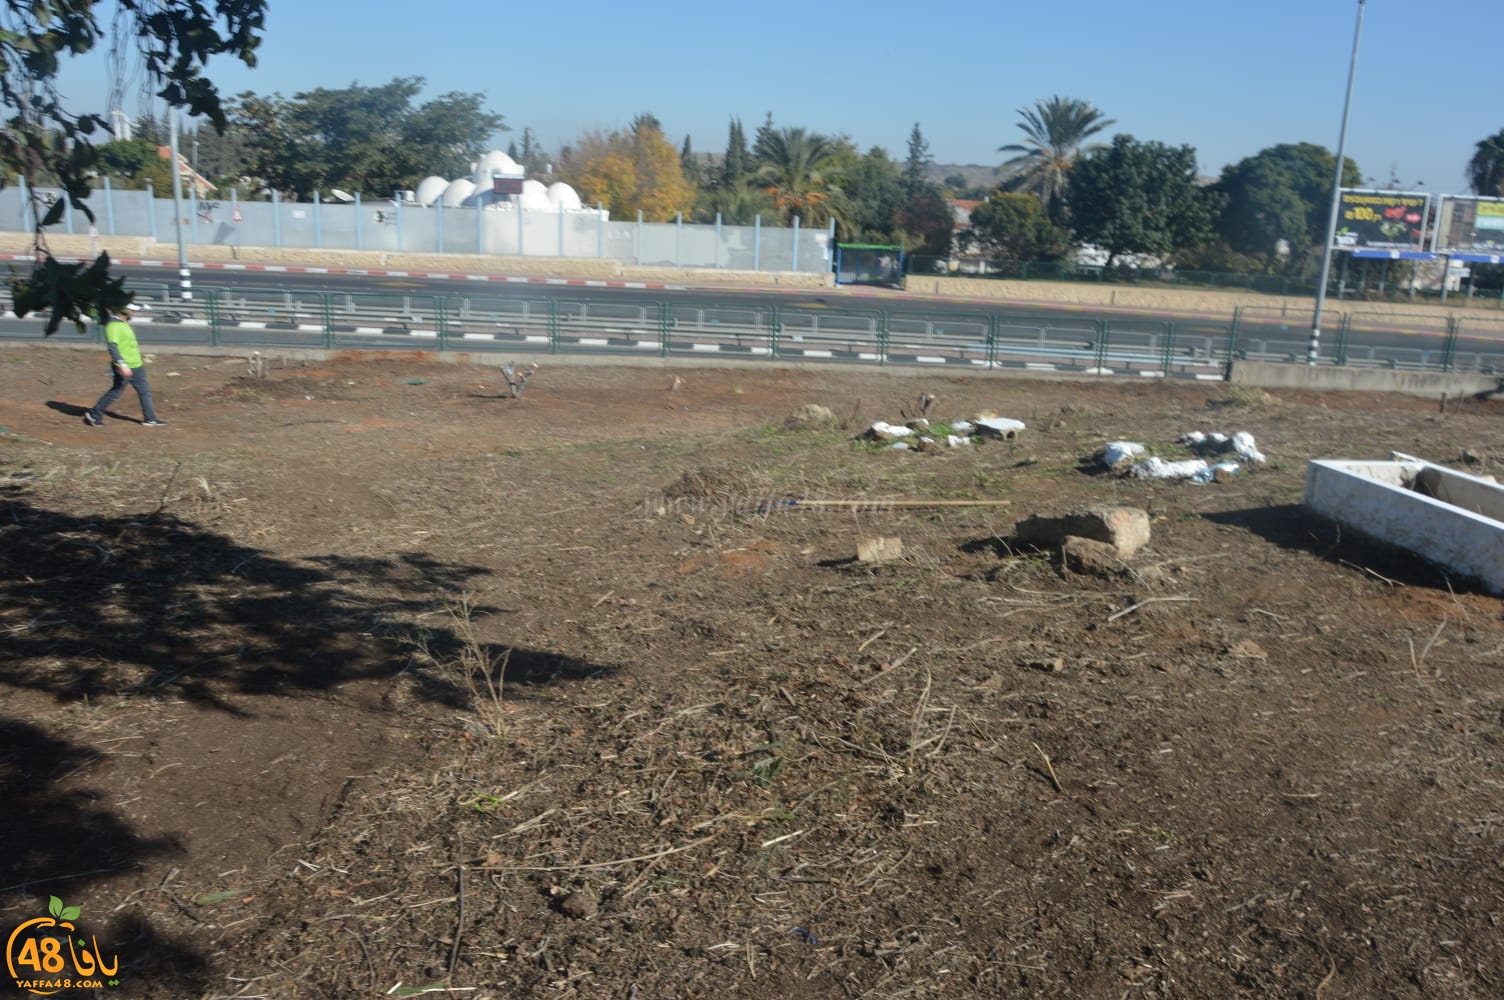  صور: تنظيف مقبرة يازور قضاء يافا ضمن معسكر الثبات 5